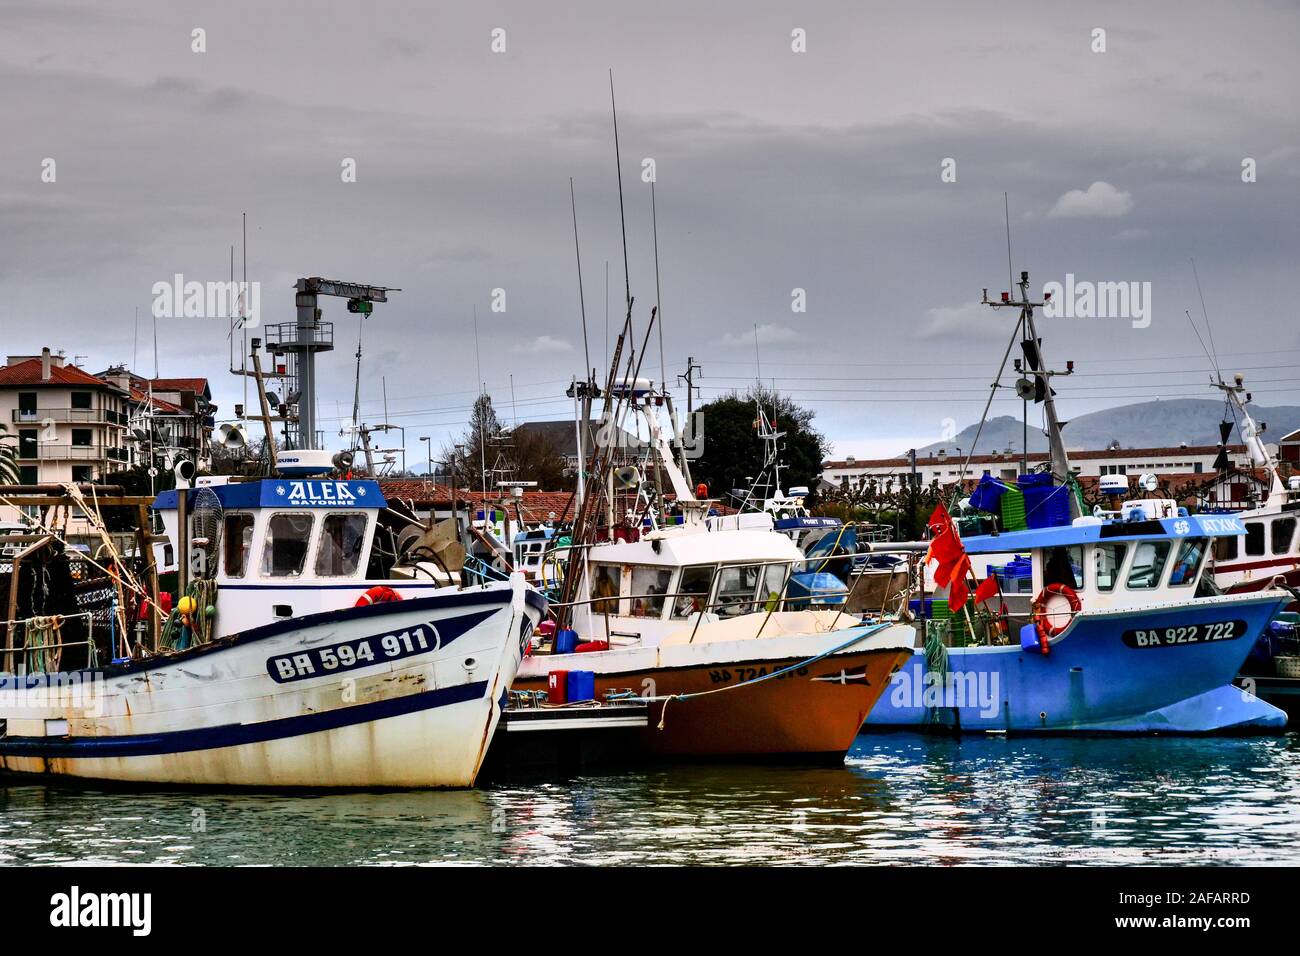 Fishing boats in Saint-Jean de Luz harbor, Pyrénées-Atlantiques, France Stock Photo